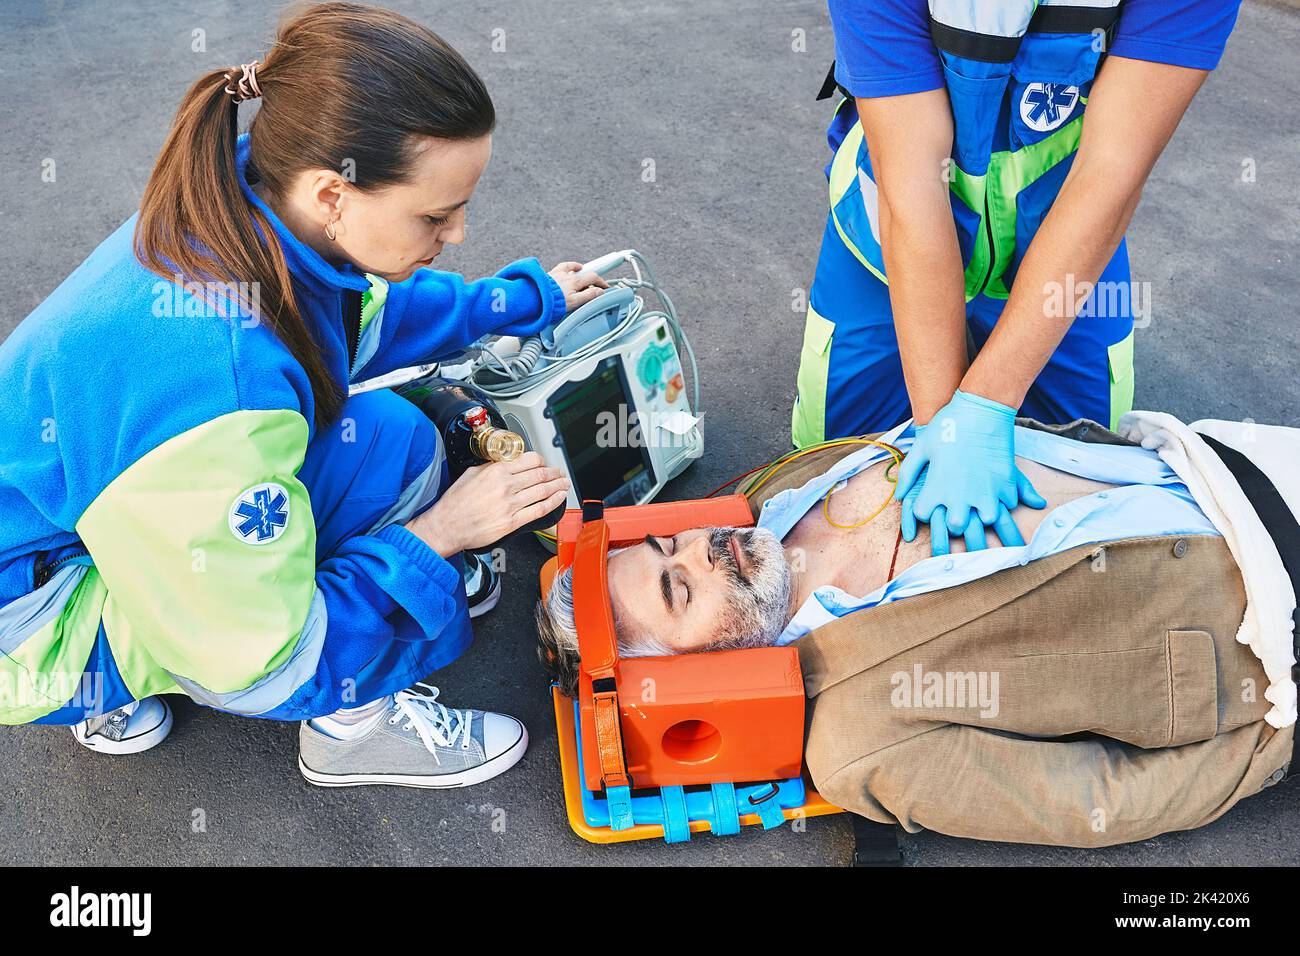 Pronto soccorso. Rianimazione cardiopolmonare e compressioni toraciche a un maschio incosciente ferito da parte di operatori in ambulanza Foto Stock